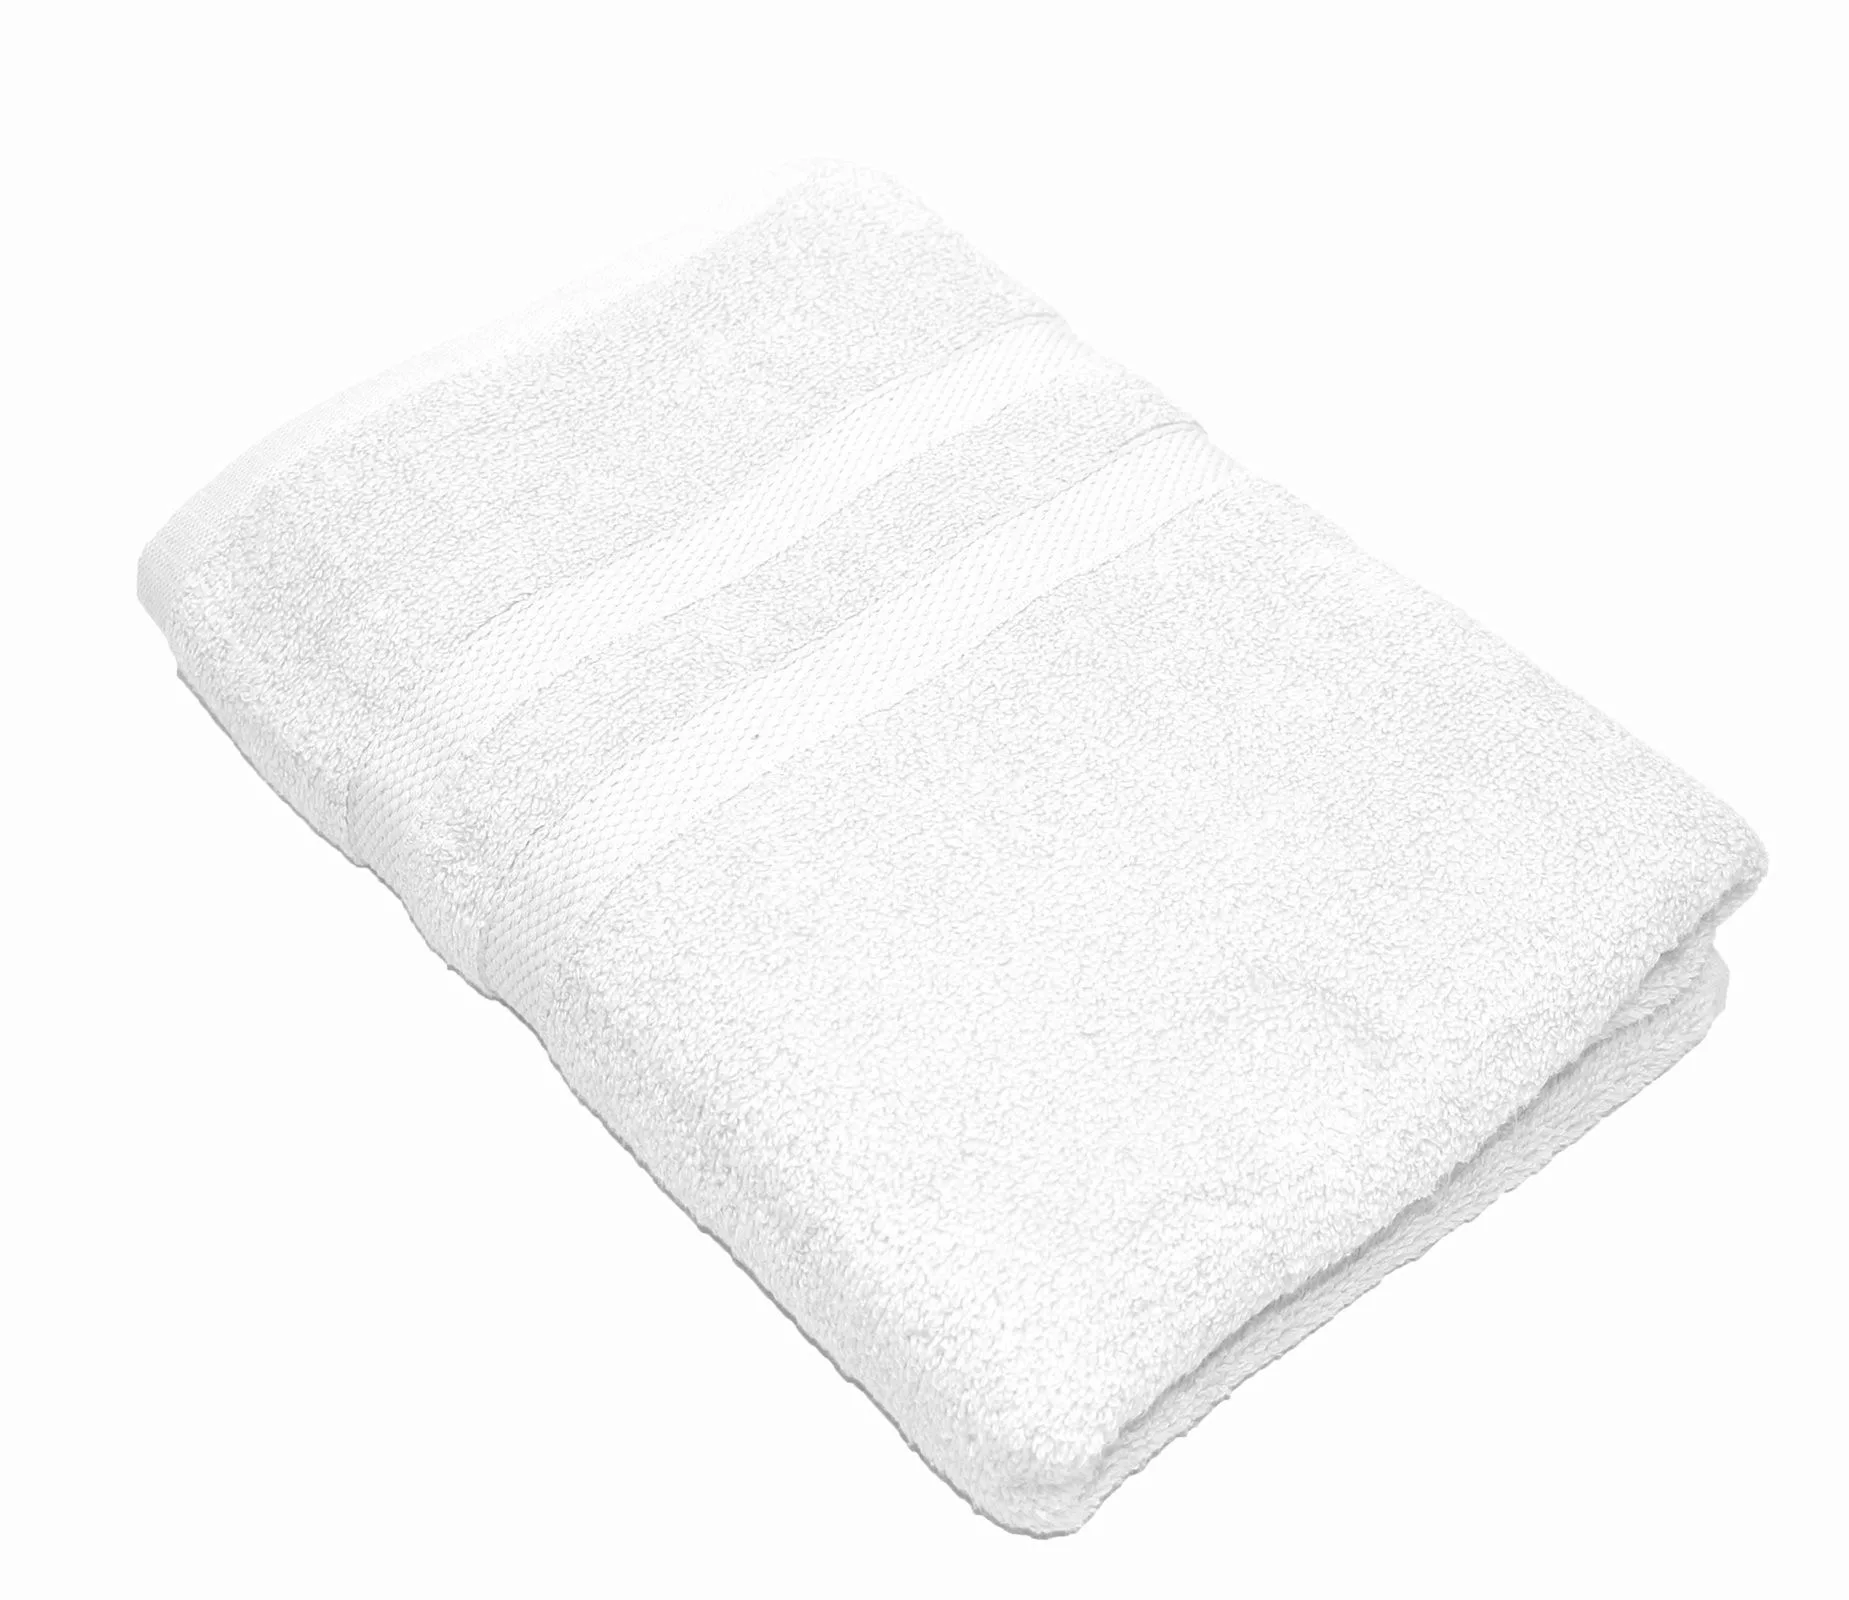 Handtuch Serie P.K. Soft Cotton 100% Baumwolle-weiß-2 er Pack Duschtuch 70x günstig online kaufen